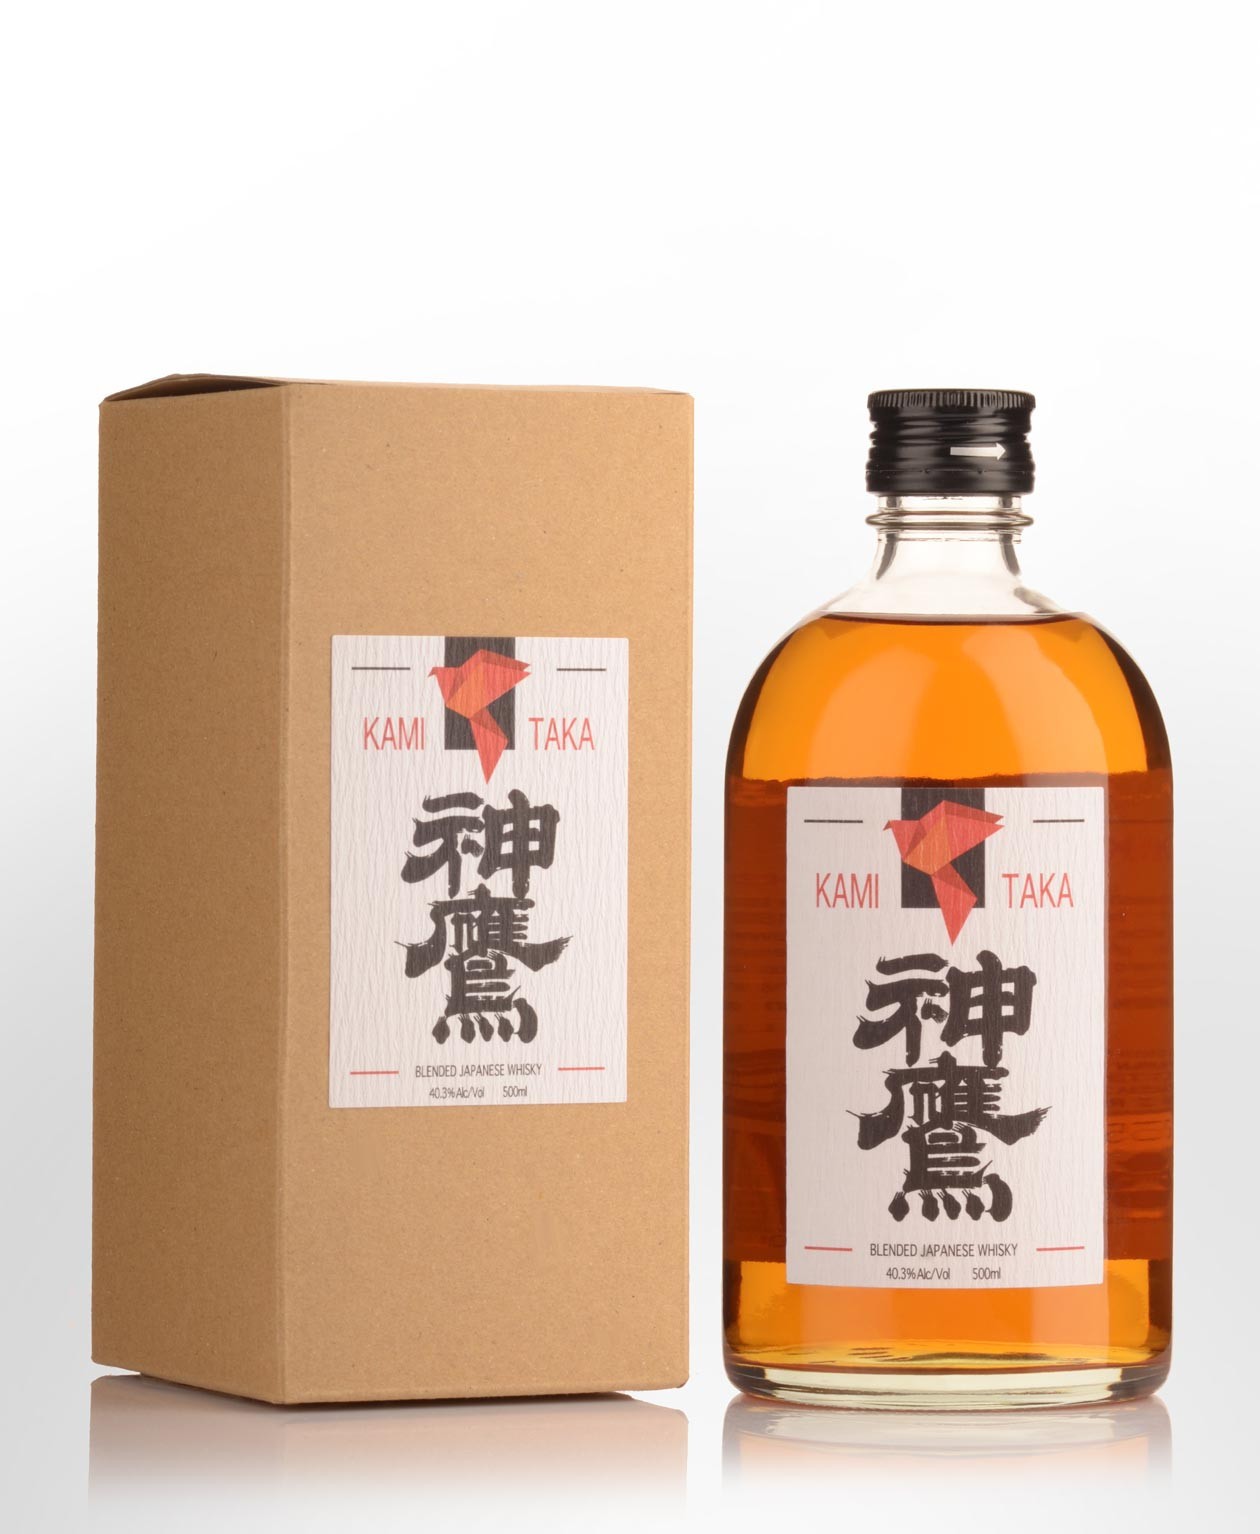 Kami Taka Japanese Blended Whisky